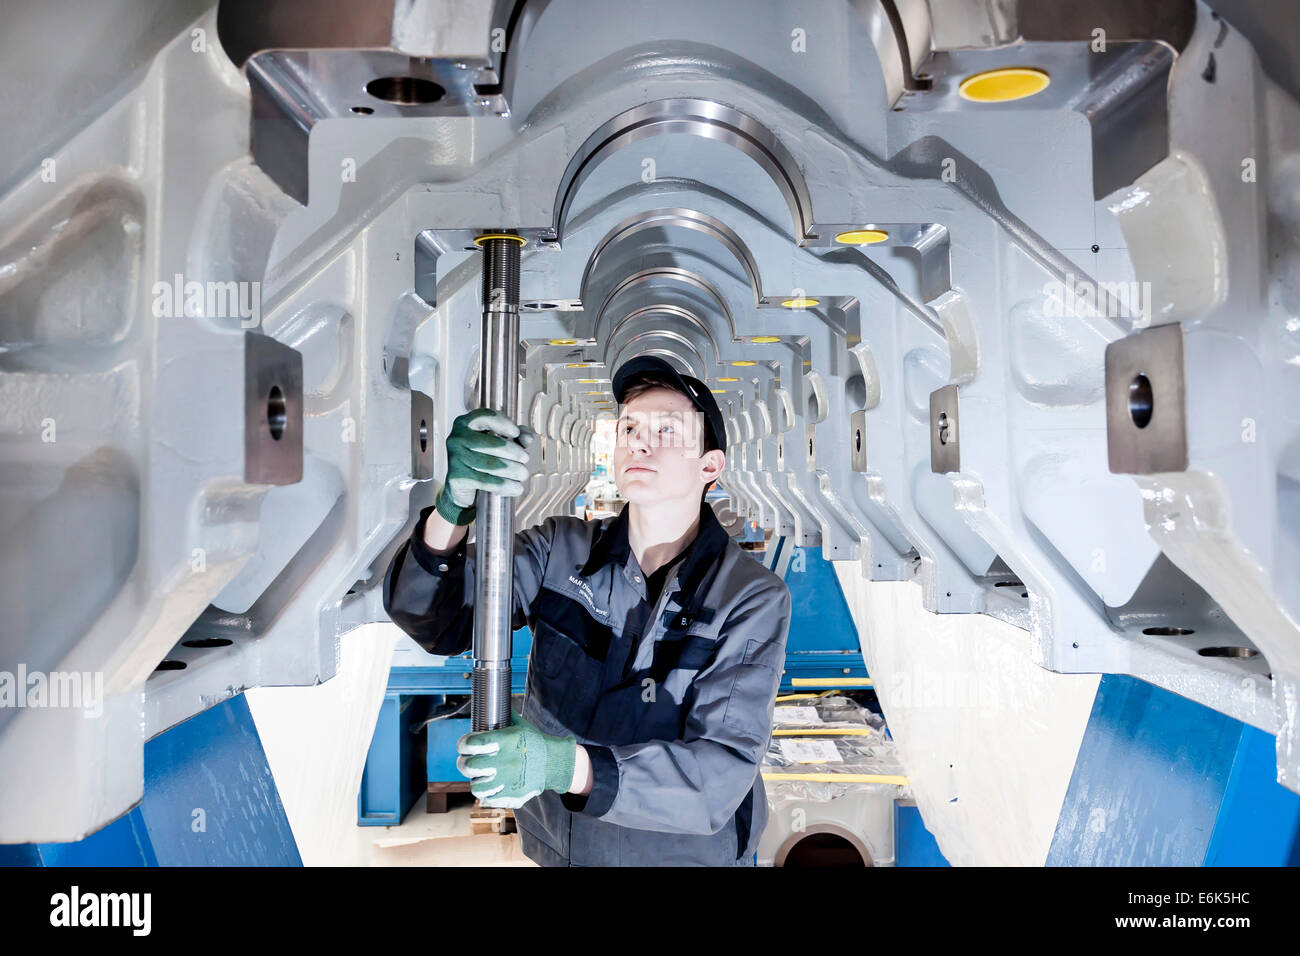 Montage d'une tige de tension employé dans le châssis du moteur d'un moteur diesel marin, l'homme et le Turbo SE, Augsbourg, Bavière, Allemagne Banque D'Images